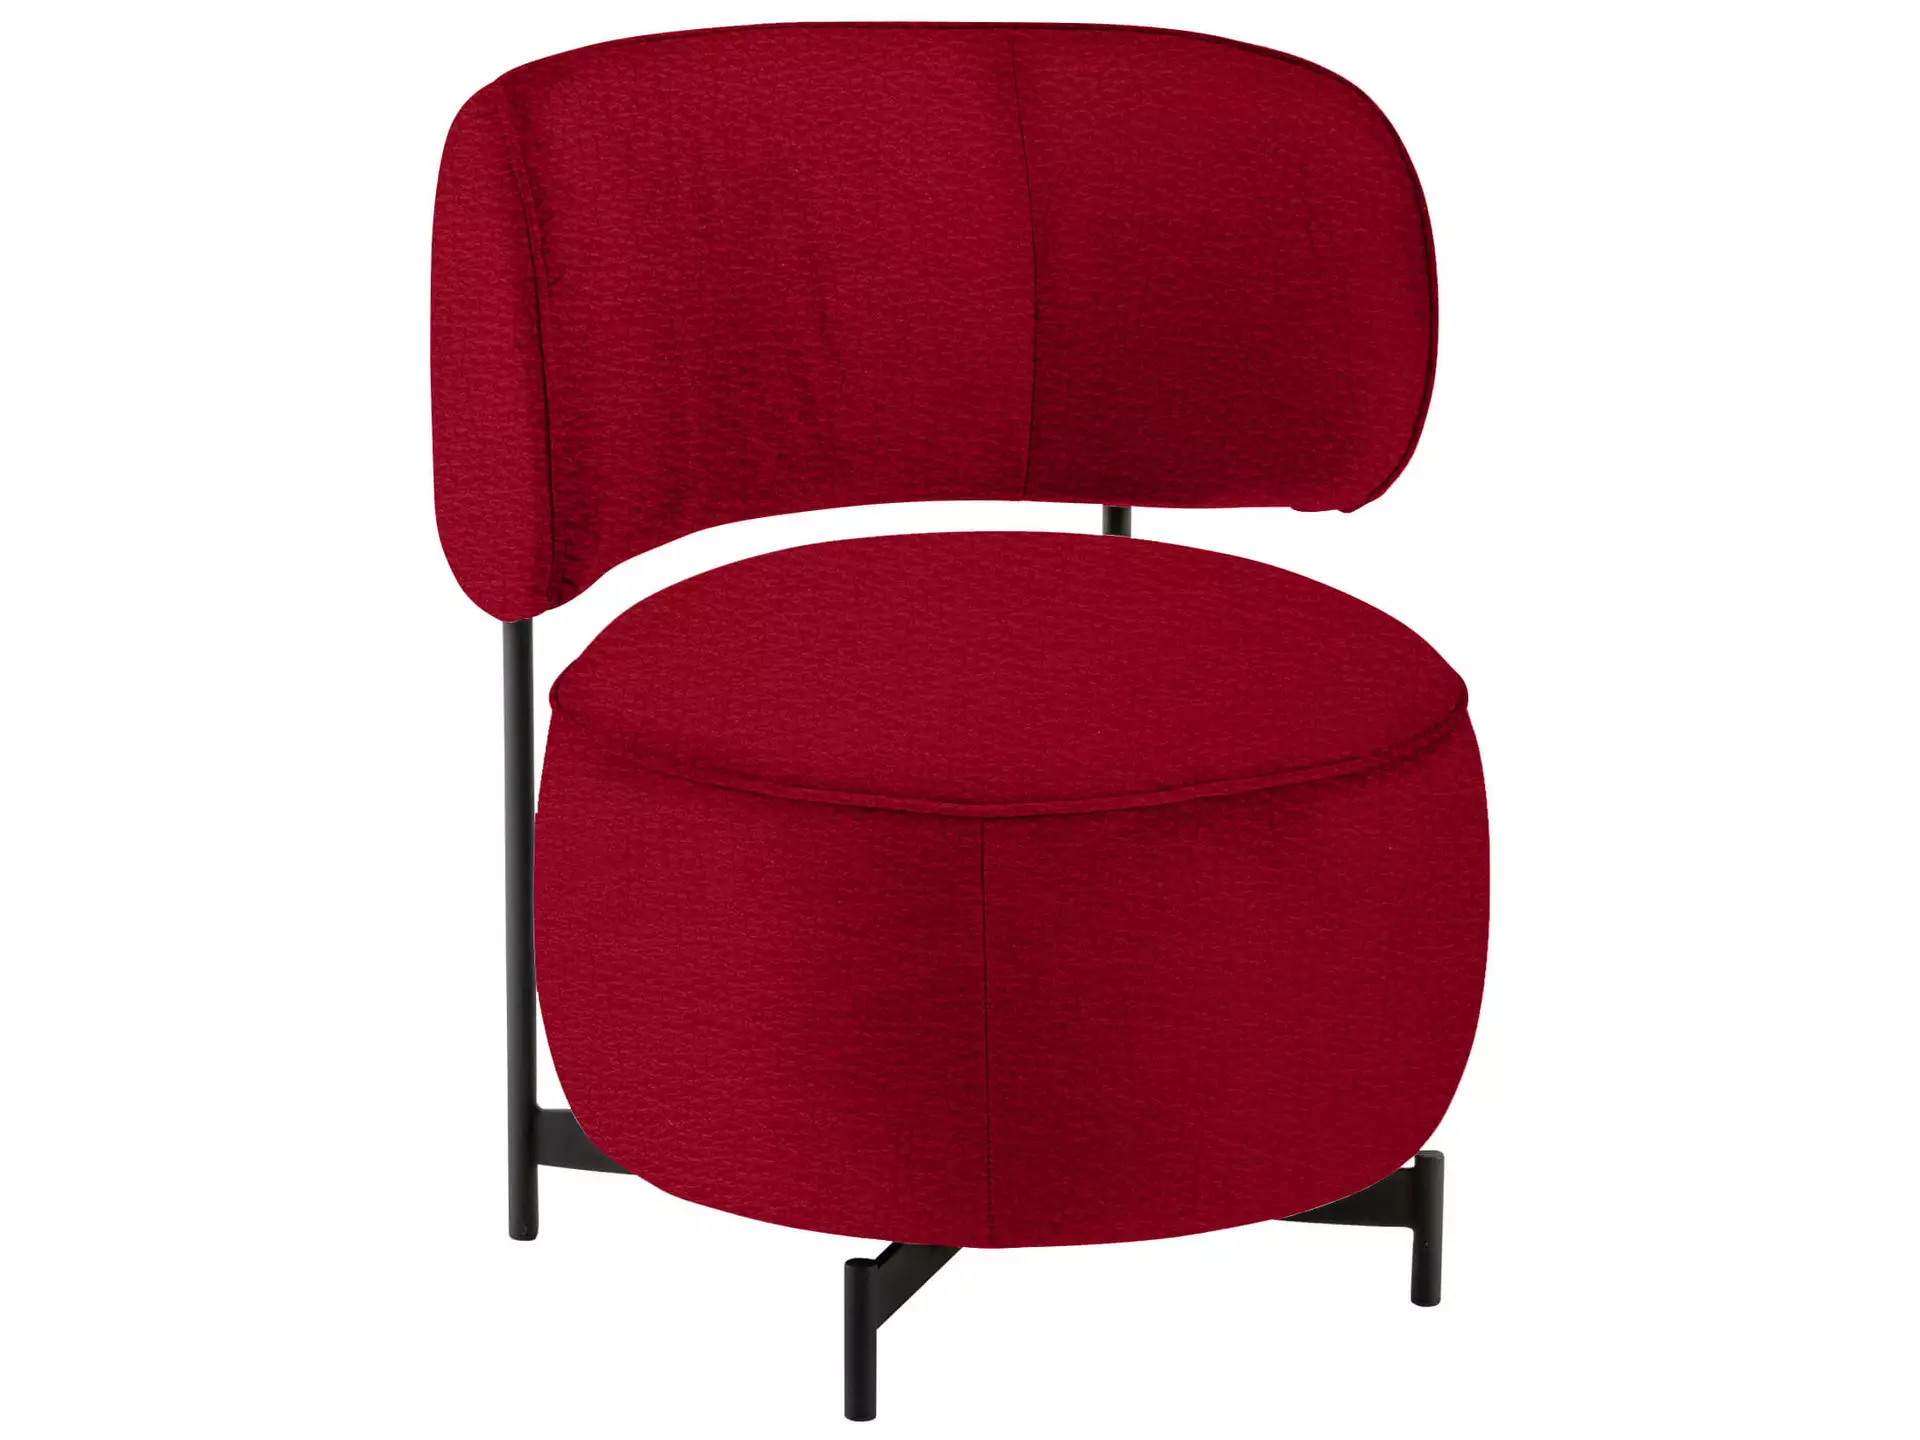 Sessel 8170 Basic Drehbar D: 68 cm Himolla / Farbe: Rosso / Material: Leder Basic